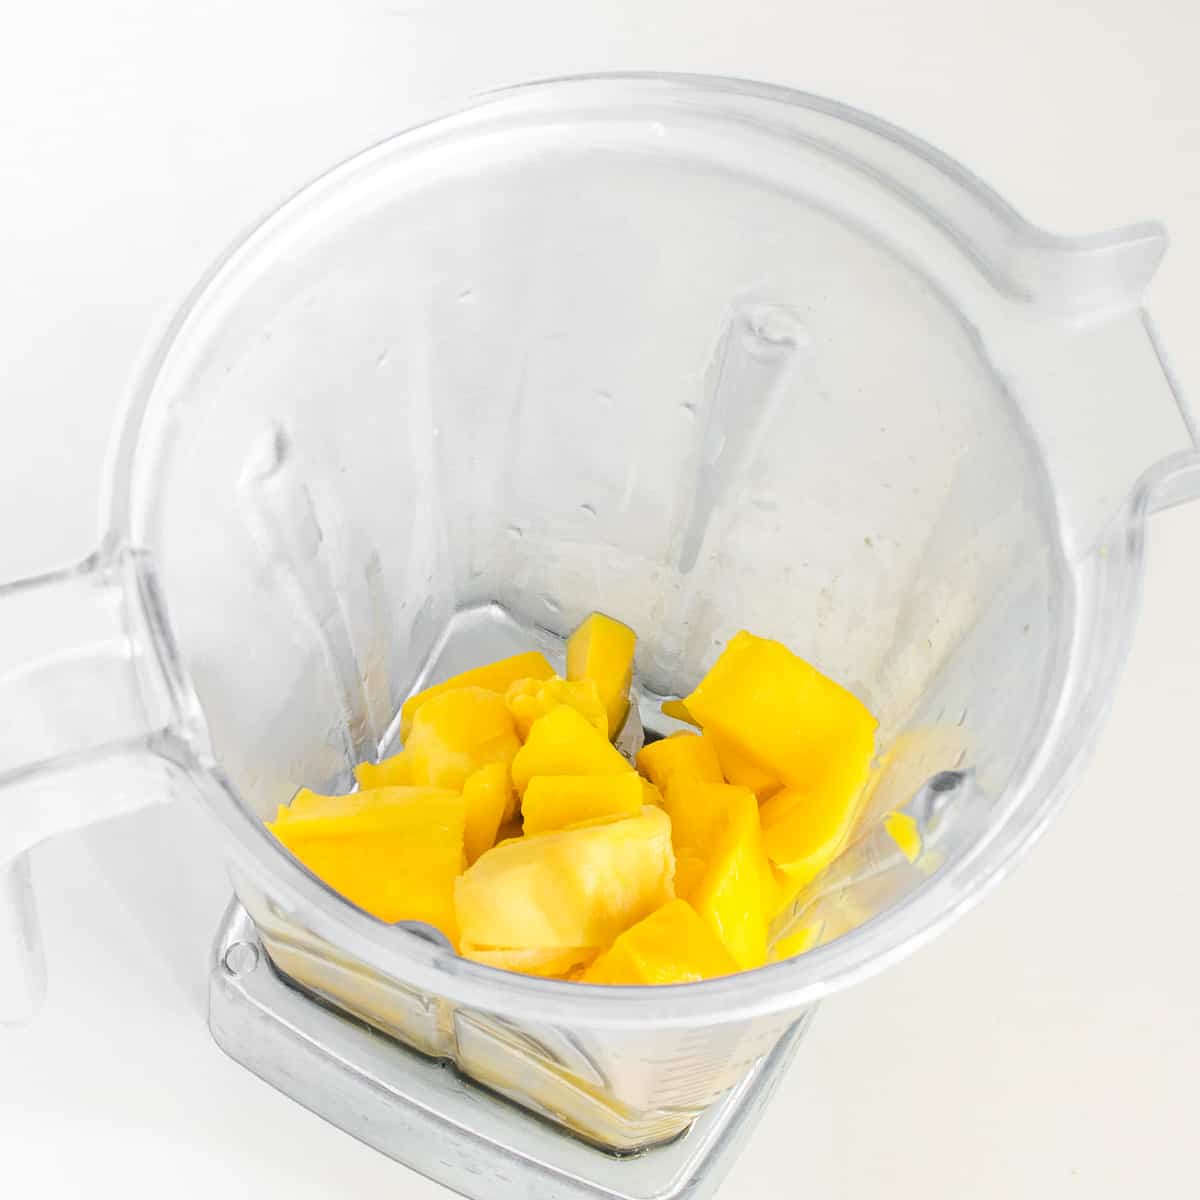 mangoes in a blender.